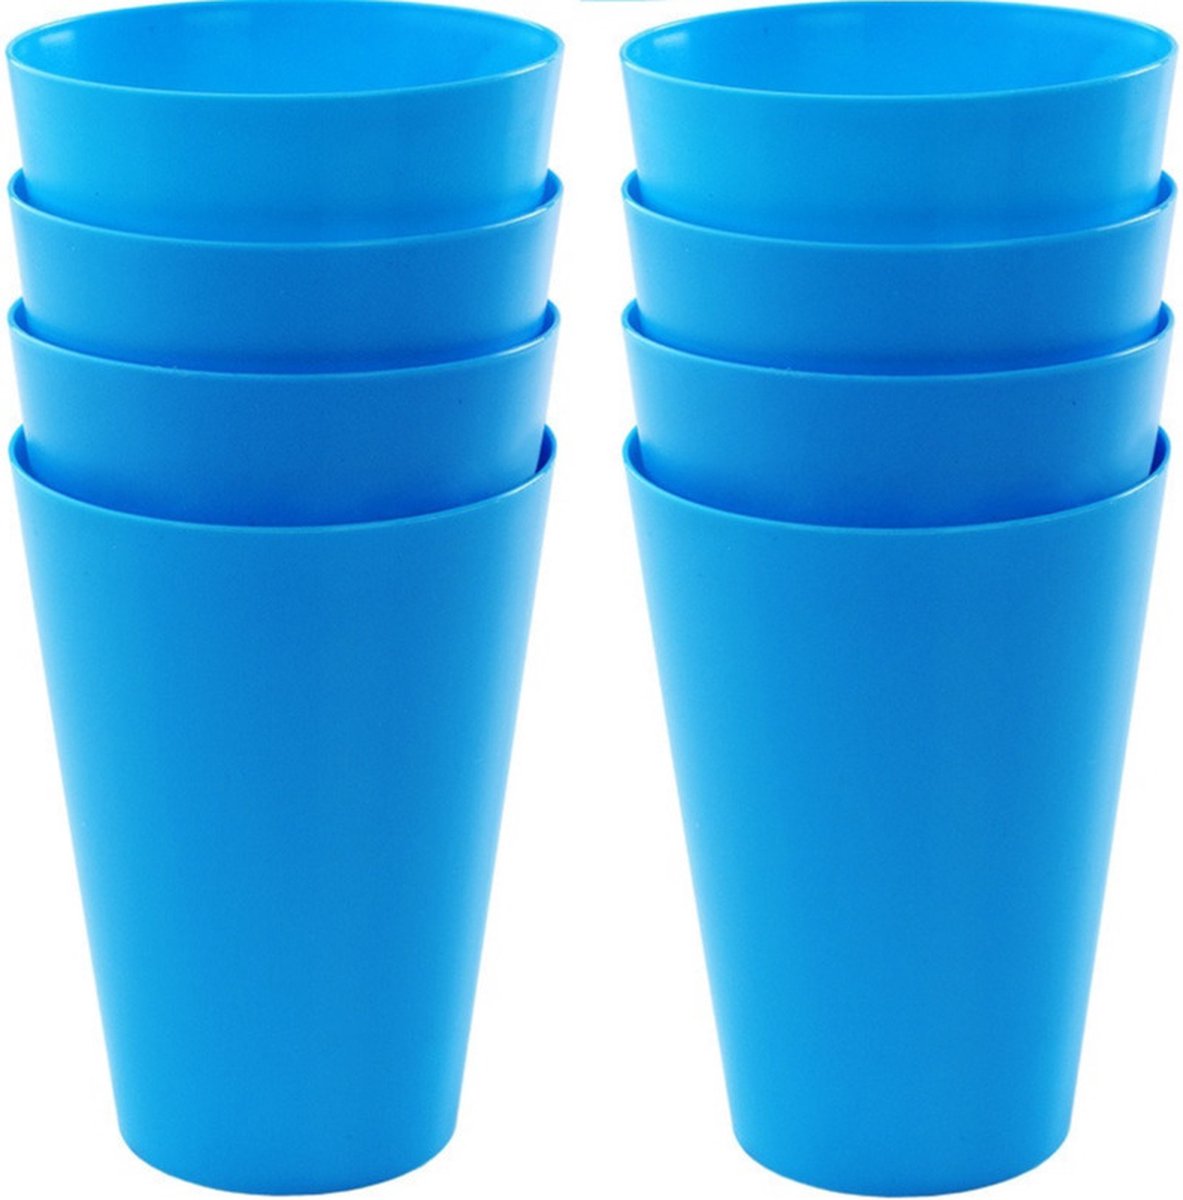 12x drinkbekers van kunststof 430 ml in het blauw - Limonade bekers - Campingservies/picknickservies